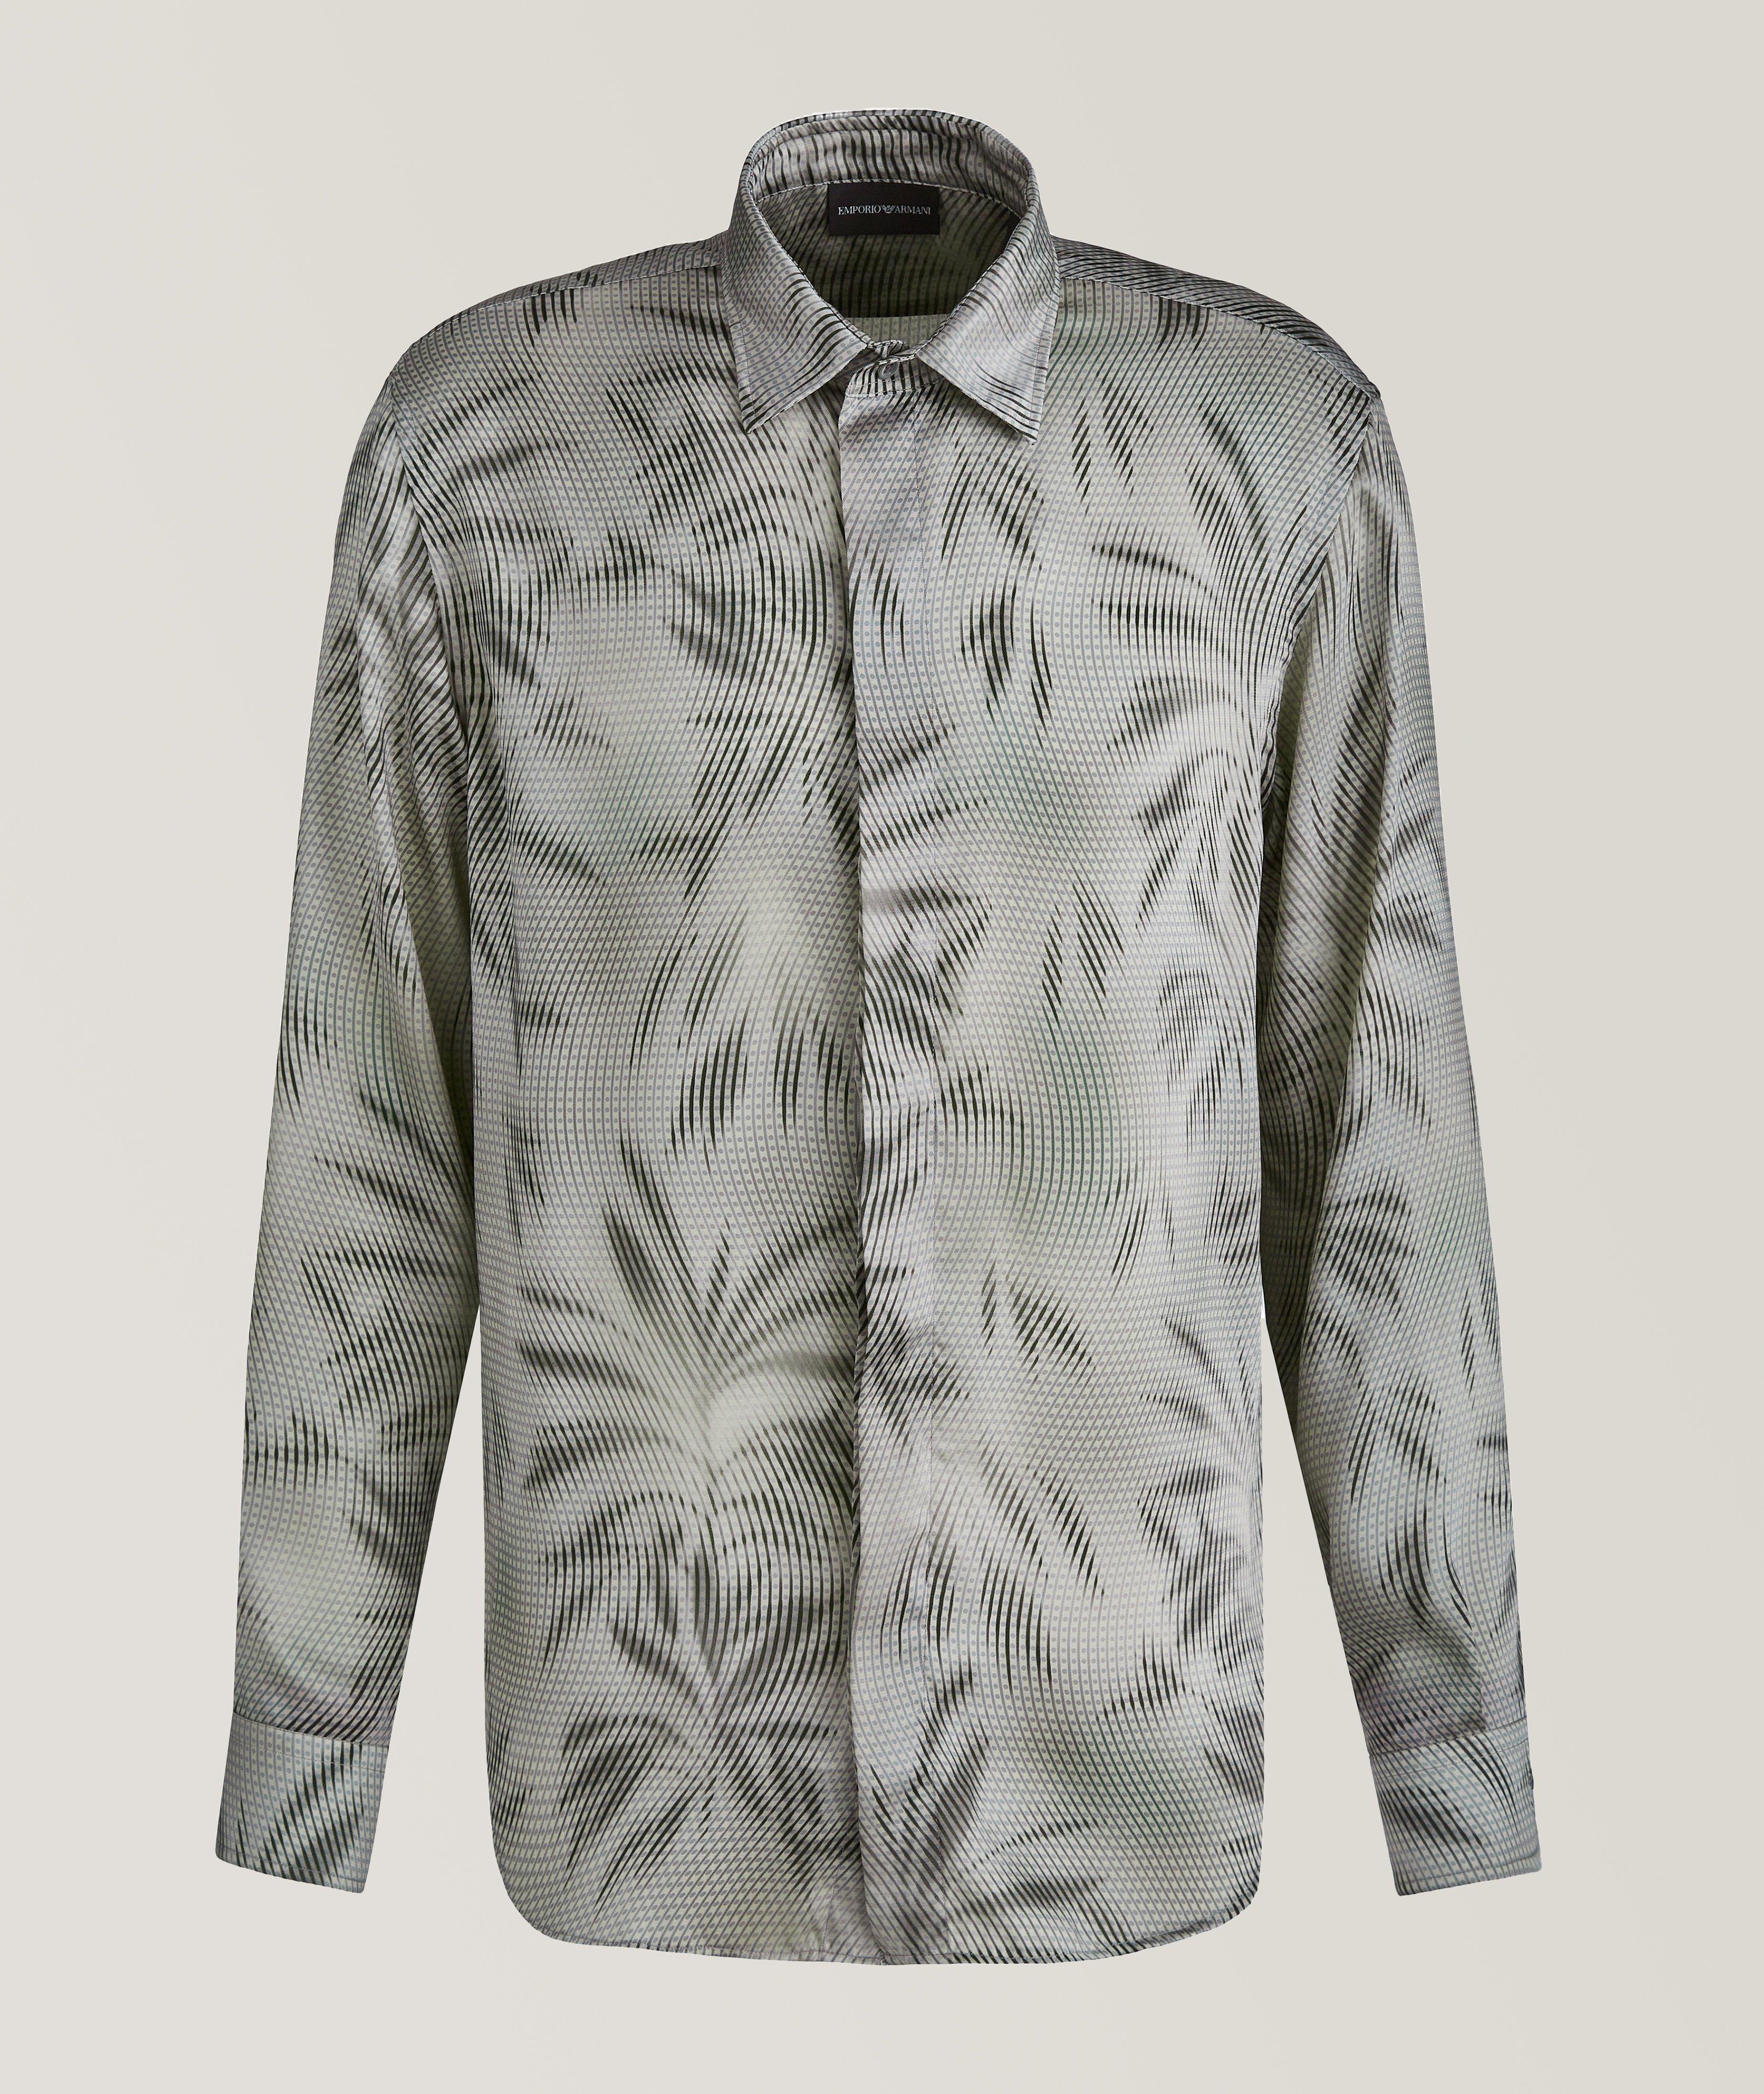 Tropical Wavy Print Shirt image 0